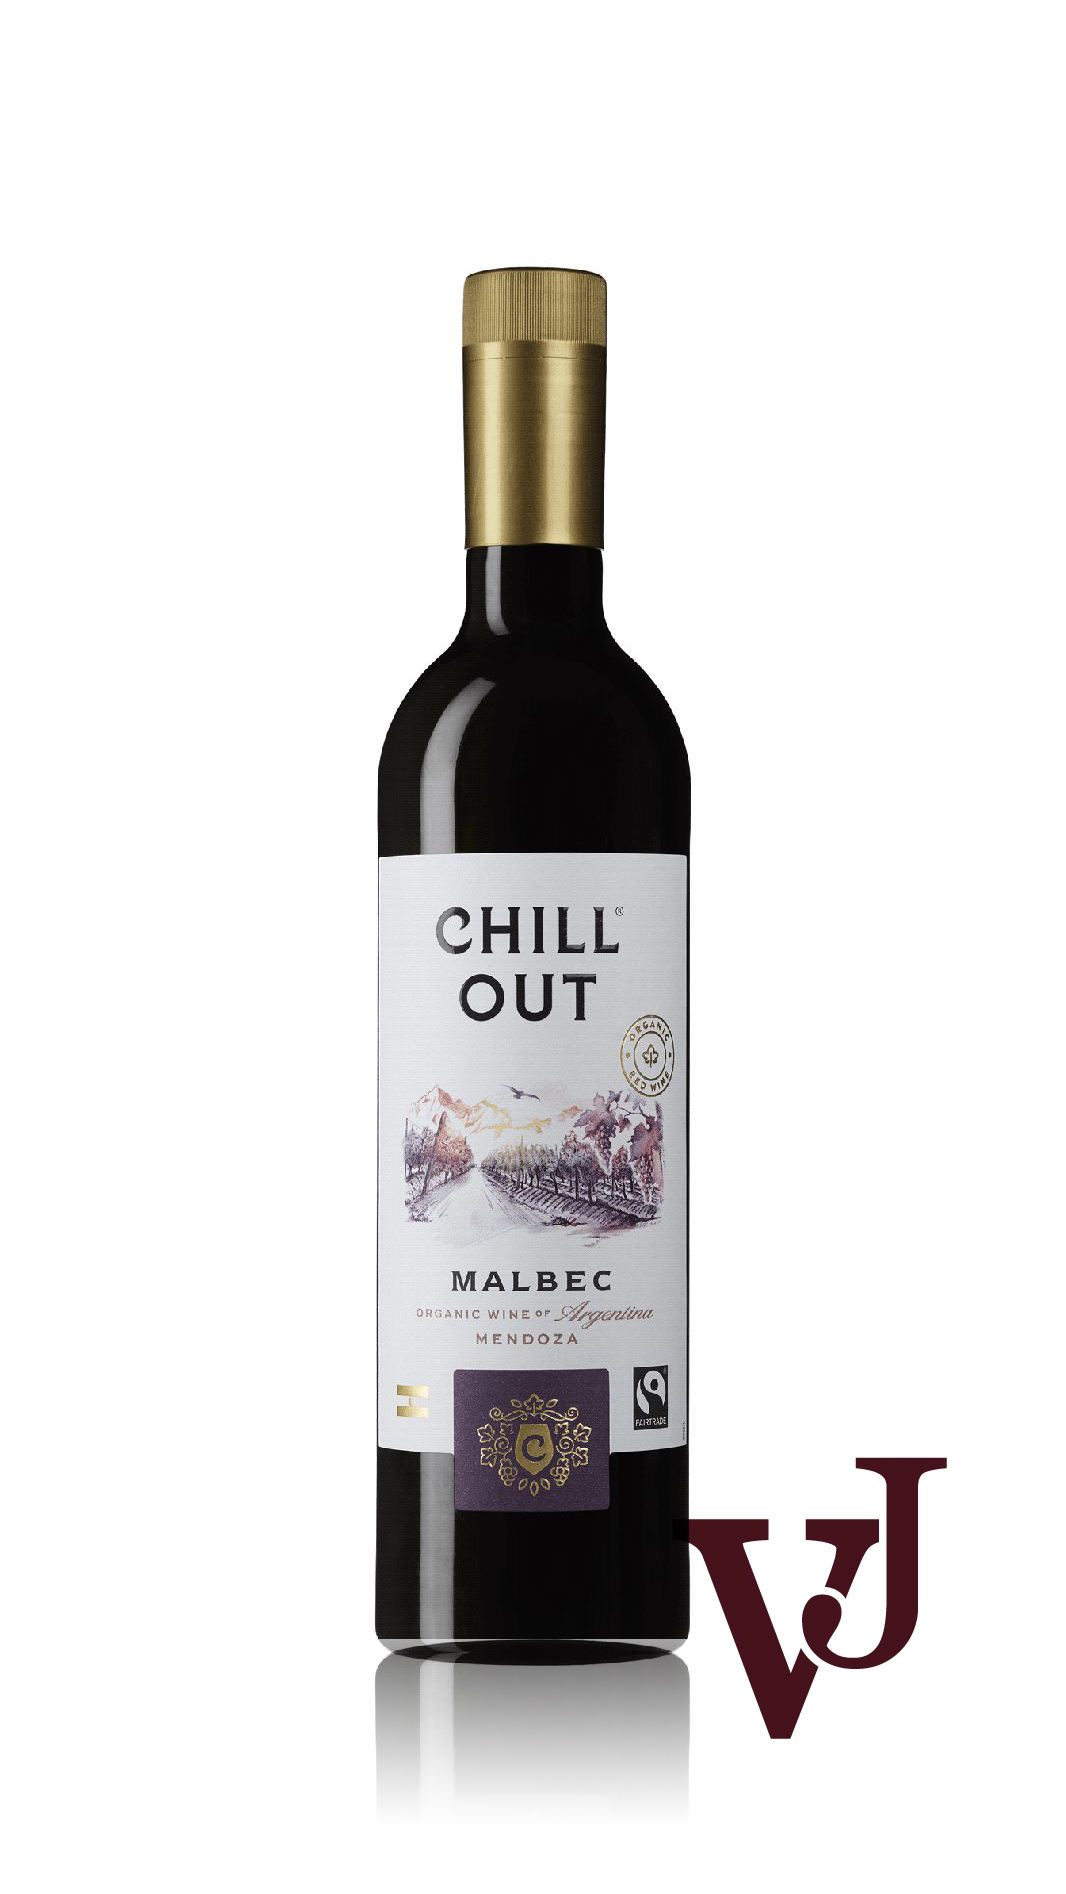 Rött Vin - CHILL OUT Malbec Argentina artikel nummer 614601 från producenten Altia från området Argentina